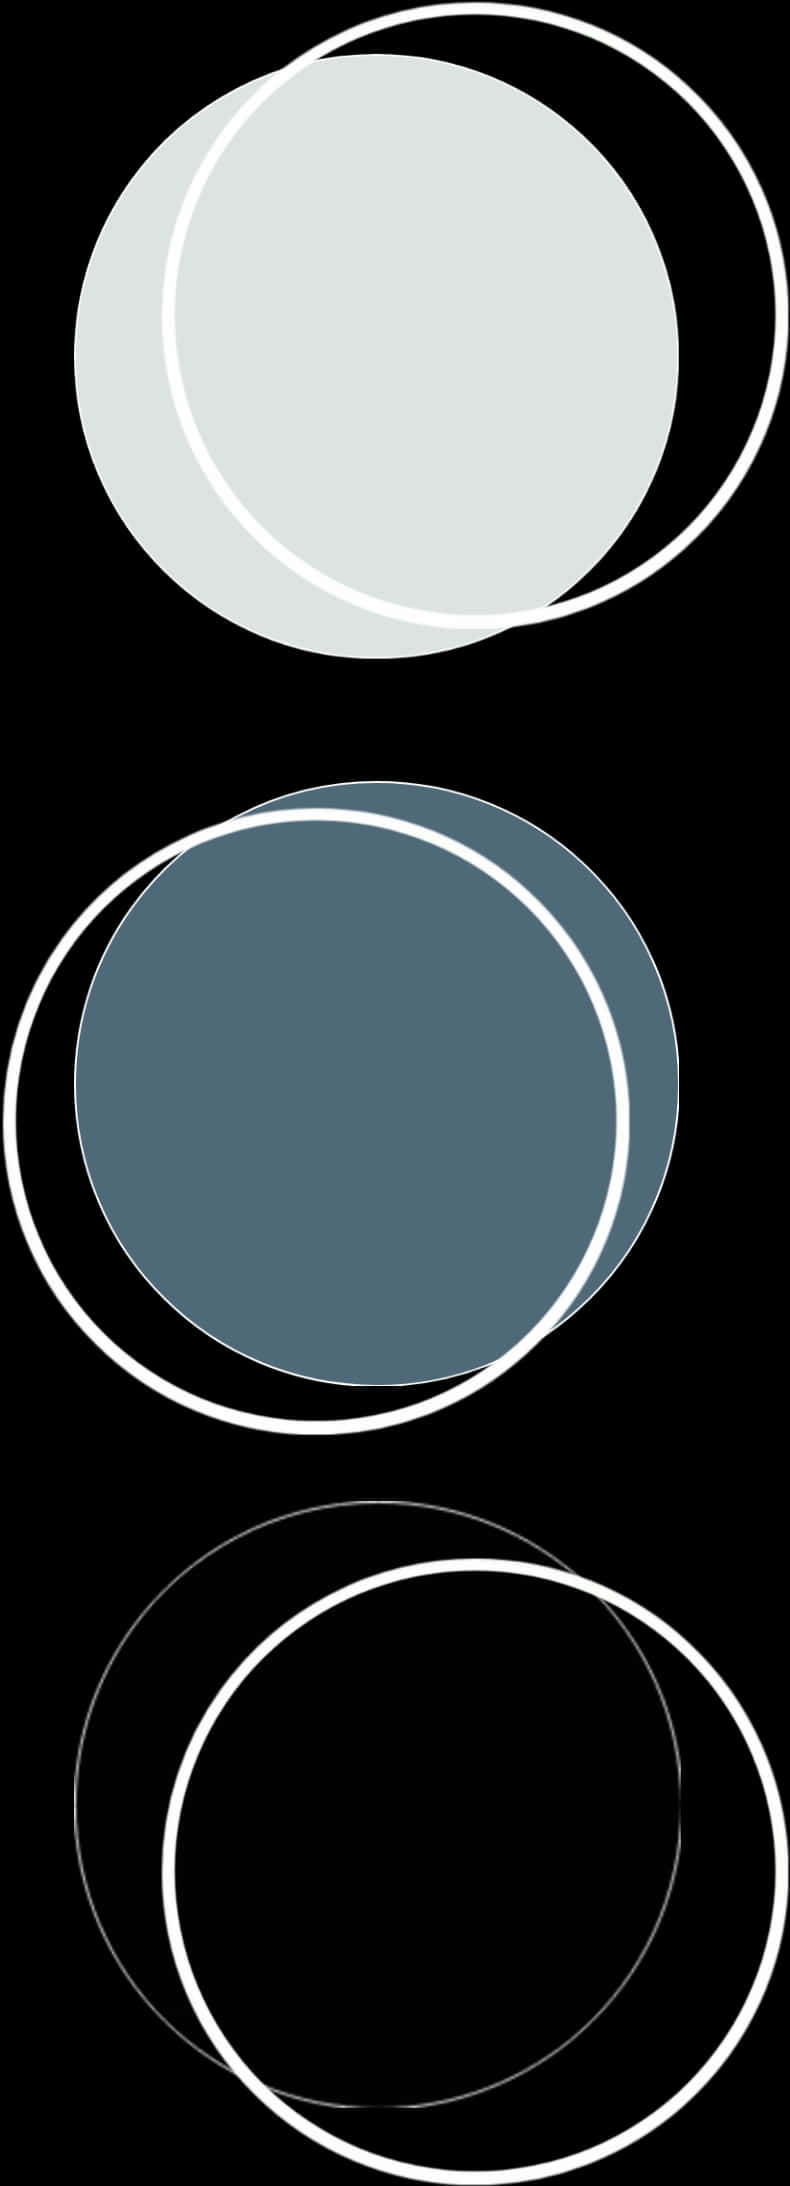 Abstract Circles Vector Art PNG image